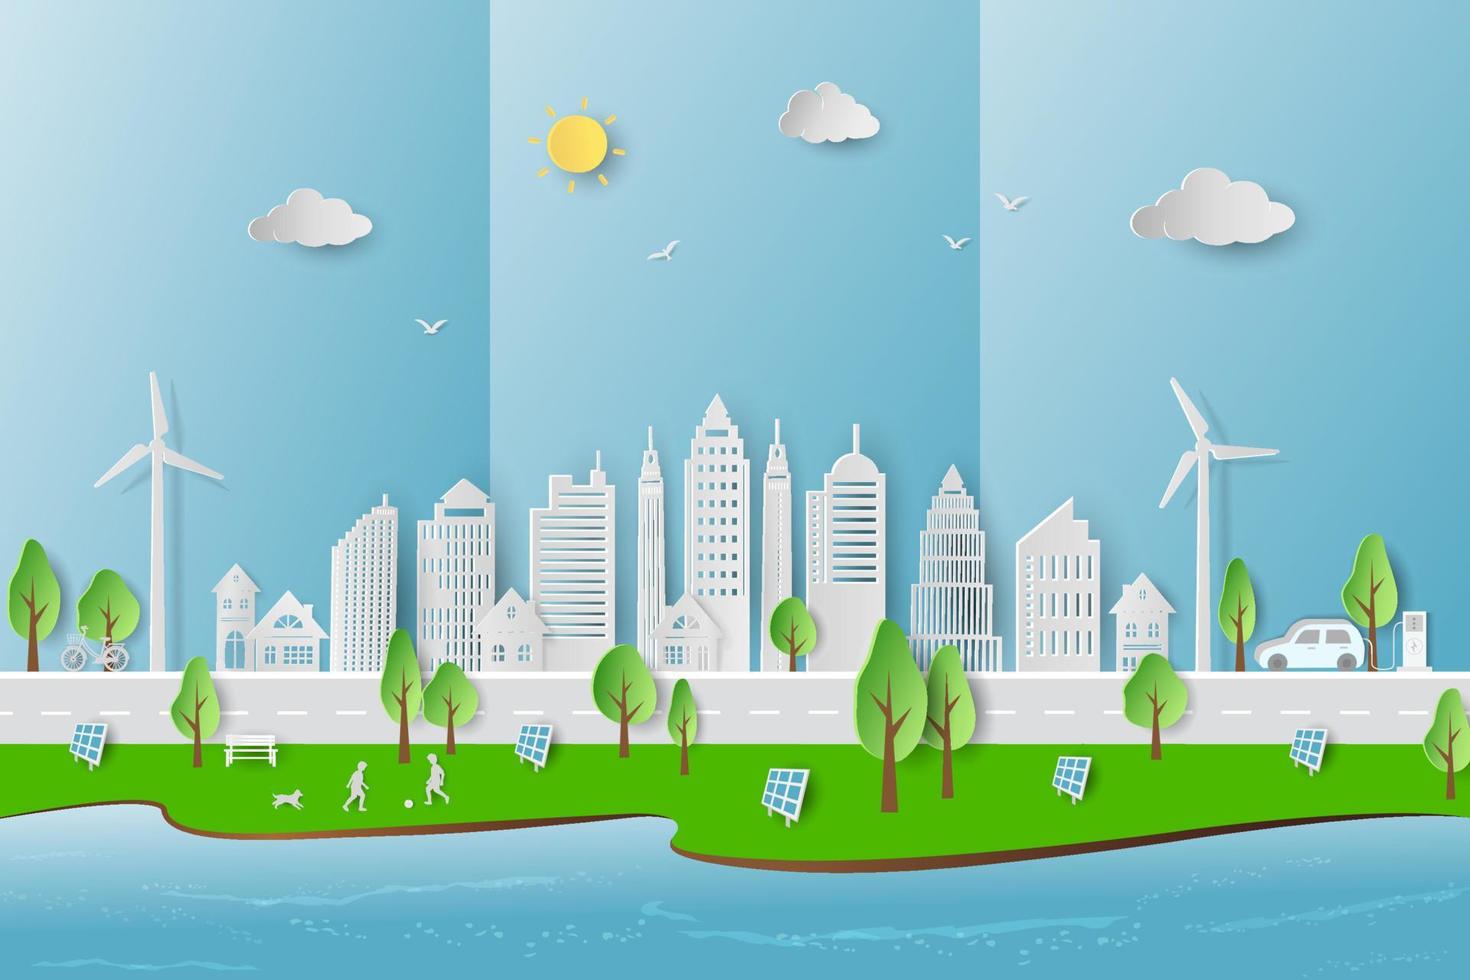 conceito de energia eco amigável e verde com eco cidade no estilo de arte de papel vetor